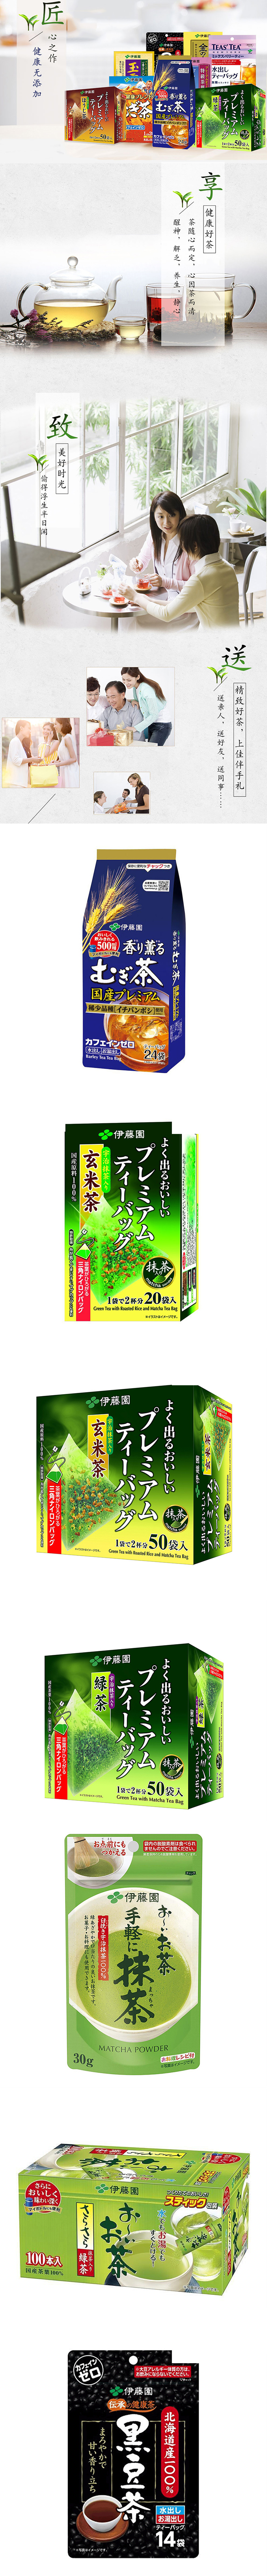 【日本直邮 】伊藤园ITOEN 健康茶叶包 日本产宇治抹茶绿茶 50袋/盒